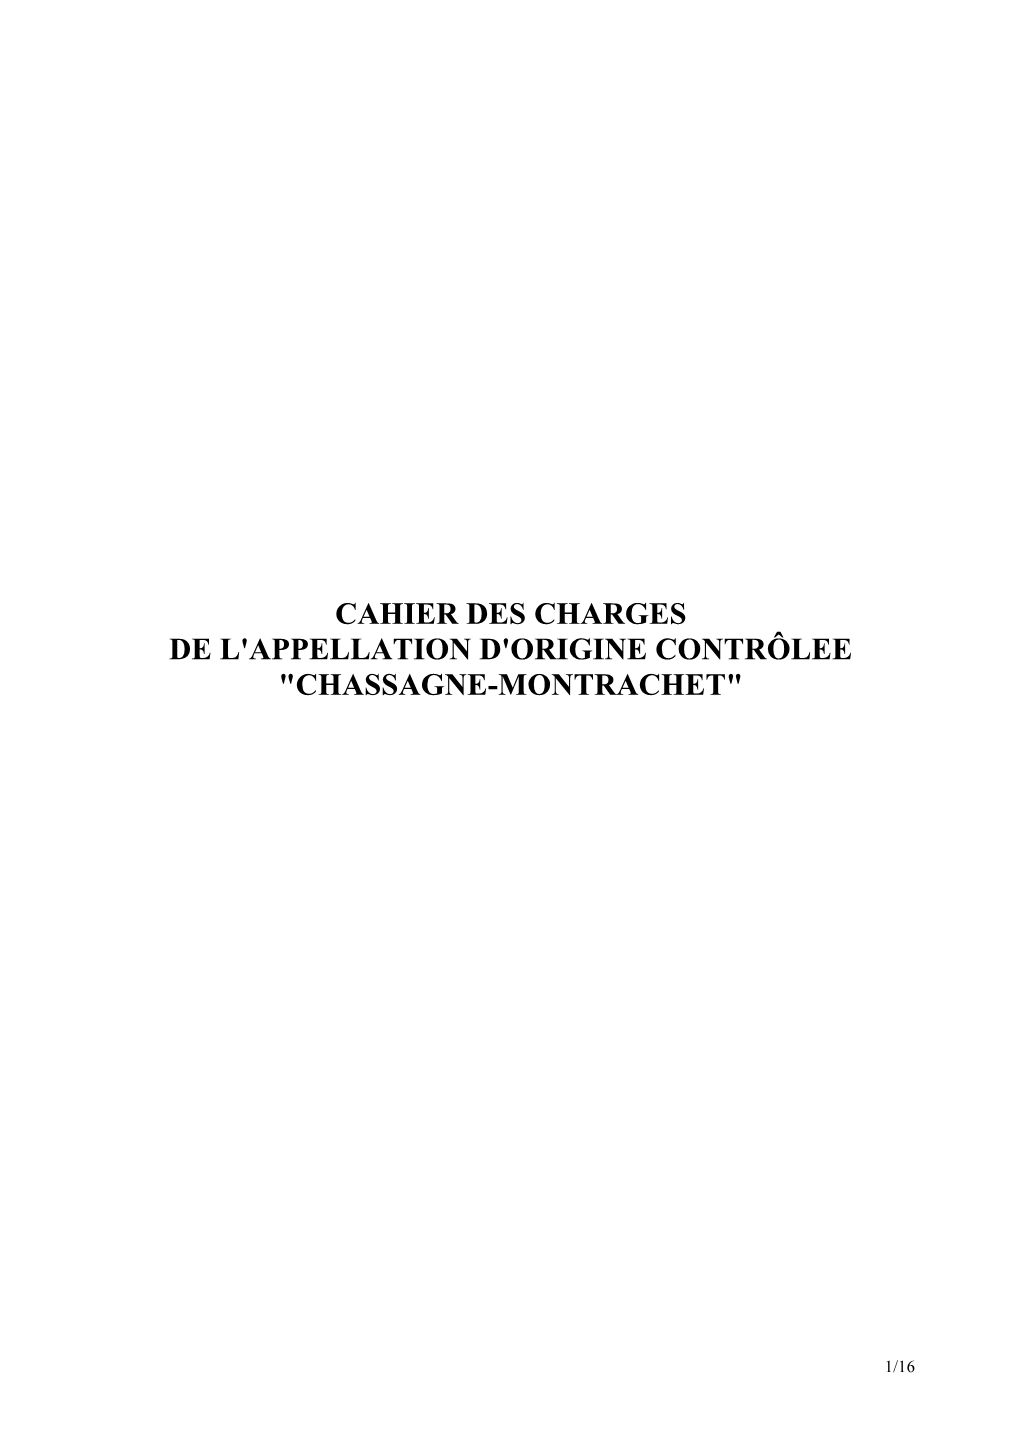 CDC CHASSAGNE-MONTRACHET Homologation 22-10-09